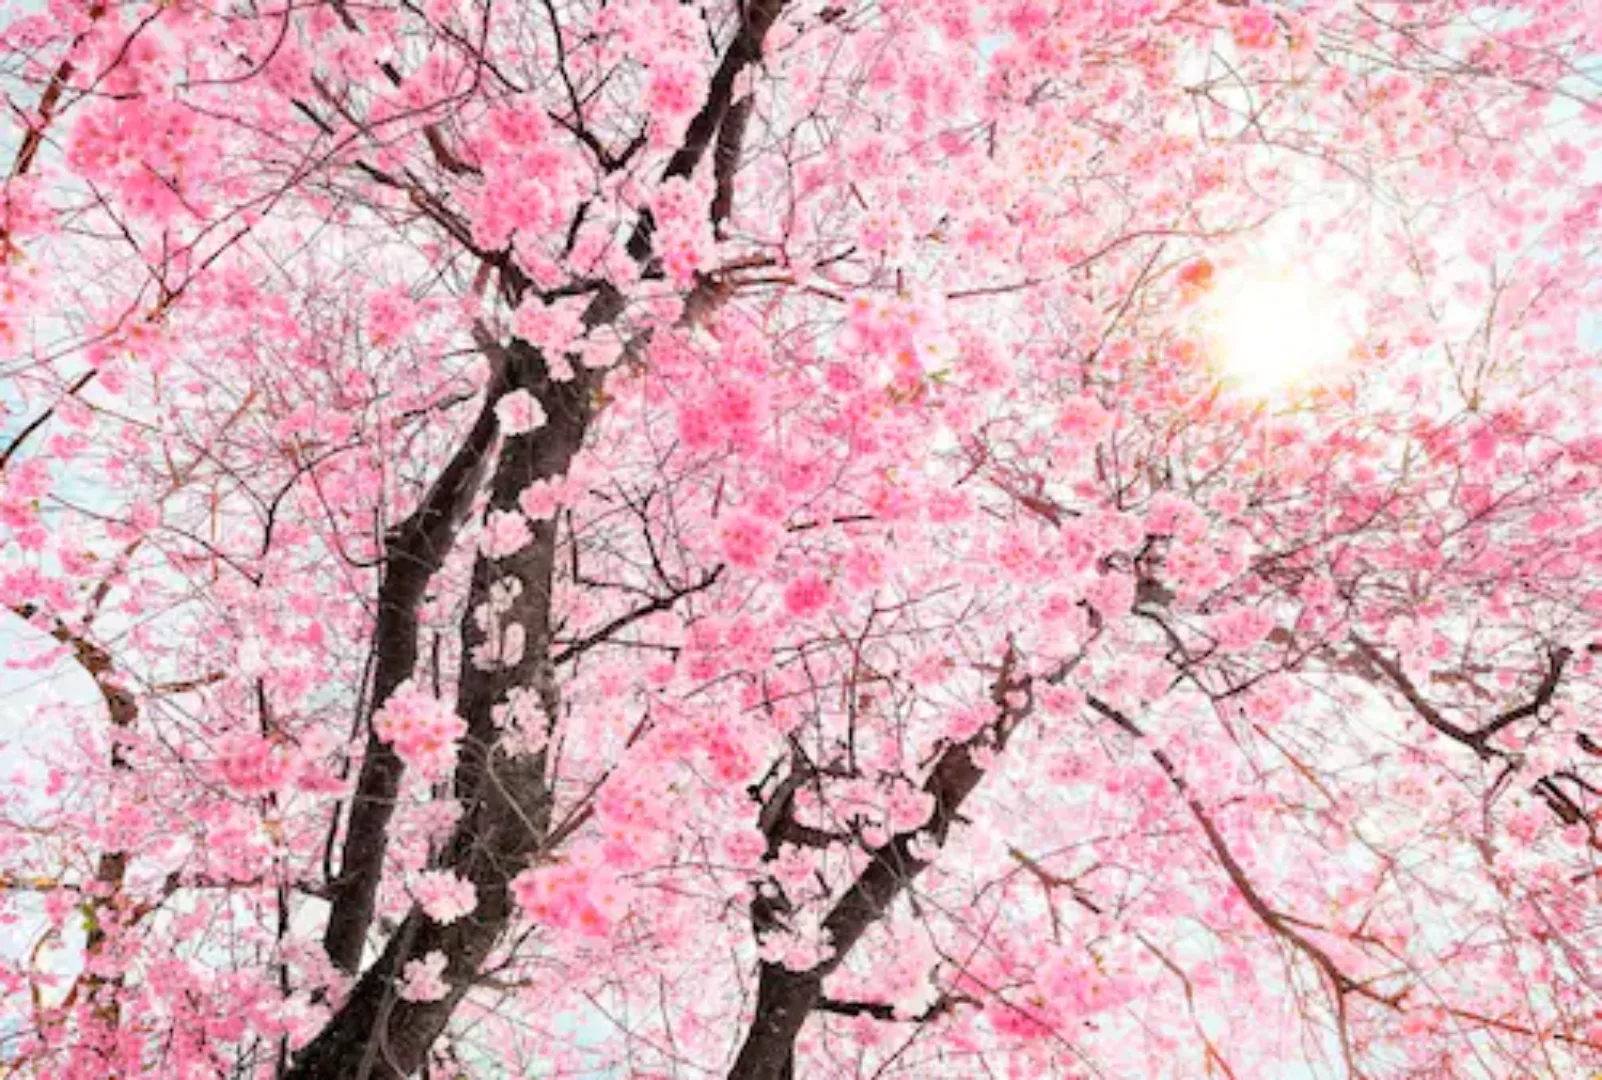 KOMAR Vlies Fototapete - Bloom - Größe 400 x 260 cm mehrfarbig günstig online kaufen